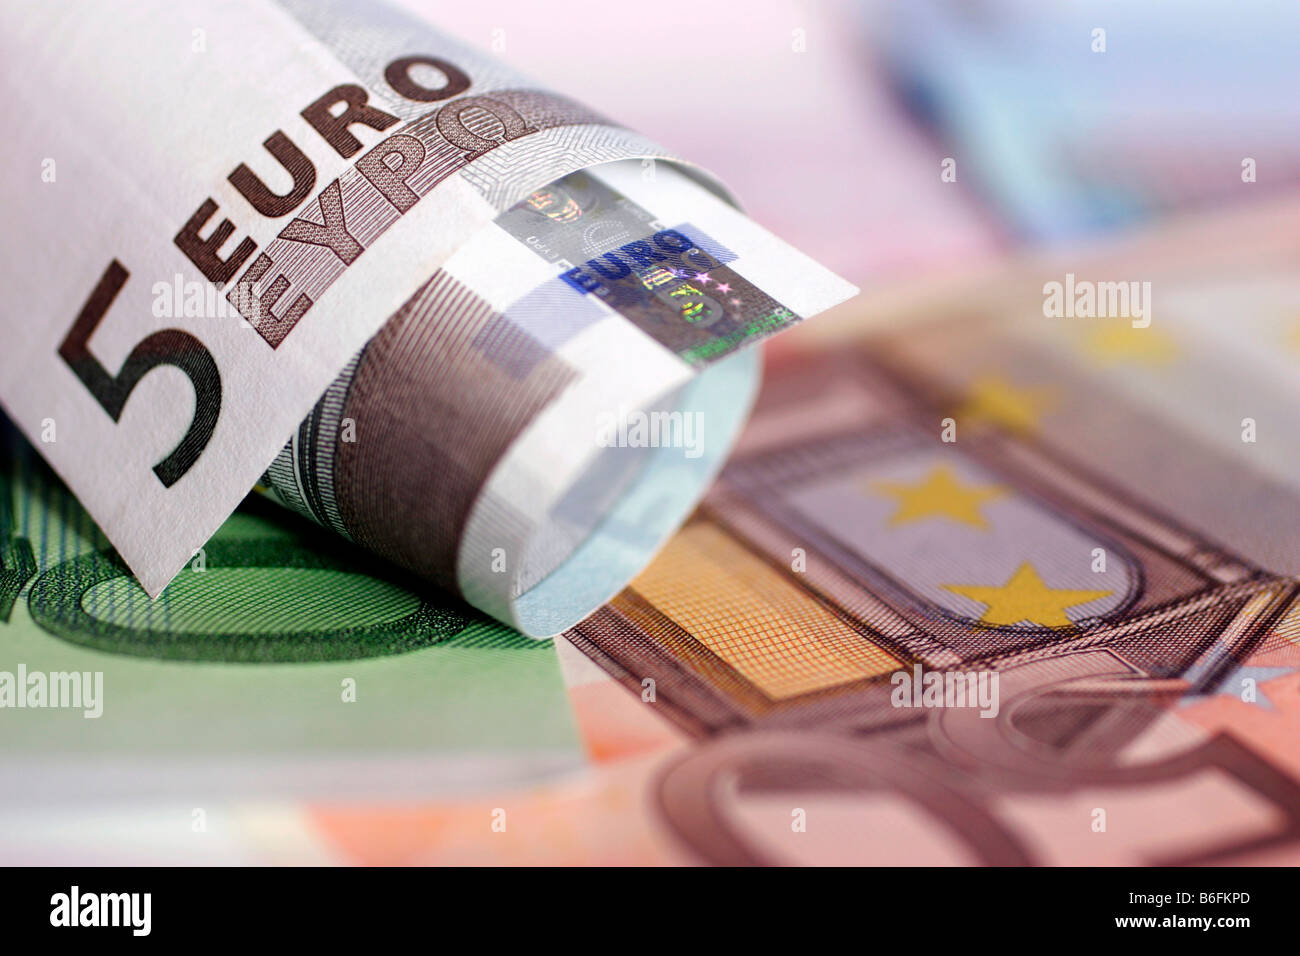 Euro bank notes Stock Photo